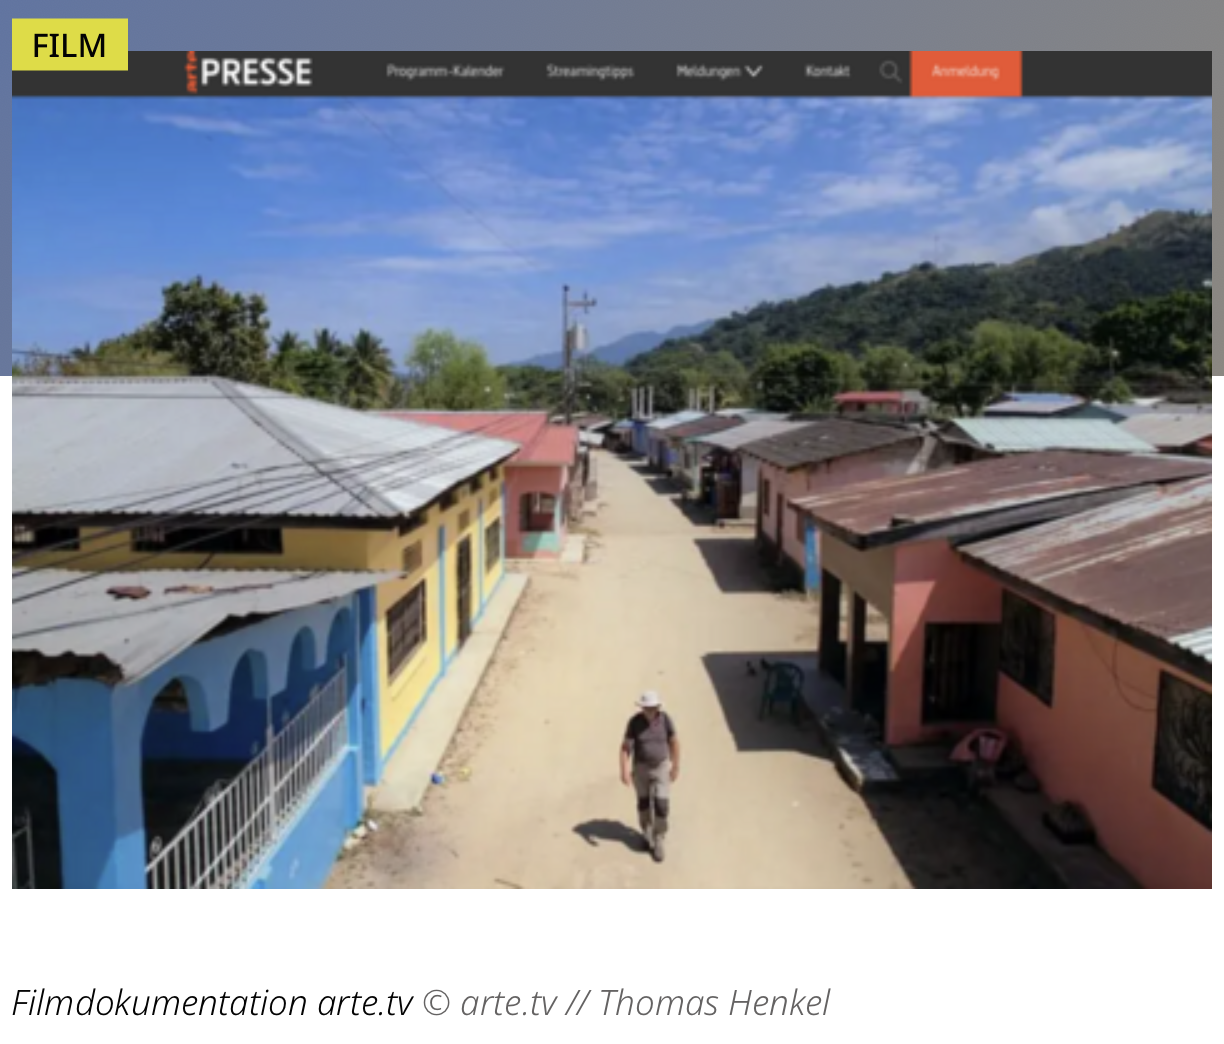 Screenshot aus dem "Honduras"-Dokumentarfilm, der eine unbefestigte Straße gesäumt von flachen, in verschiedenen Farben gestrichenen Häusern zeigt. Ein Mann läuft die Straße entlang, im Hintergrund sind dicht bewaldete Berge zu sehen.